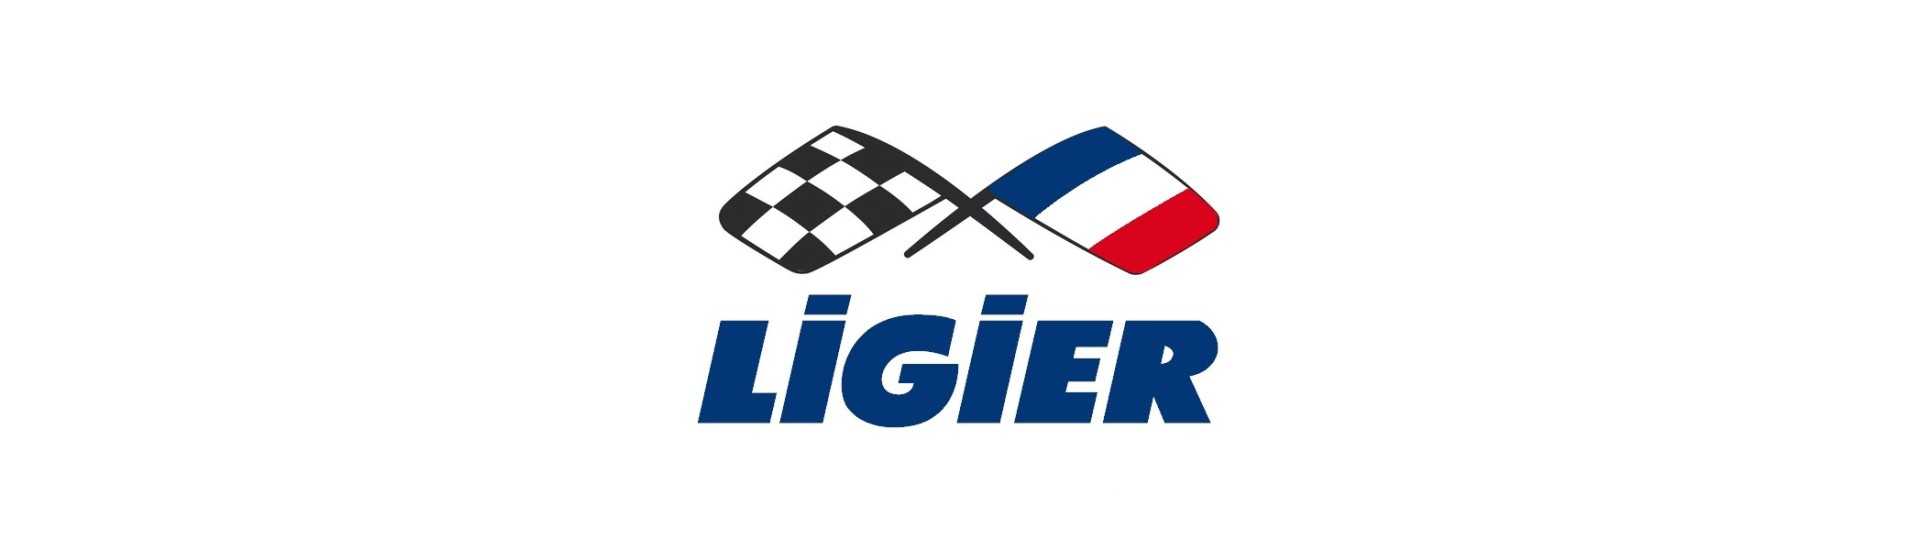 triángulo frontal al mejor precio para coche sin un permiso Ligier